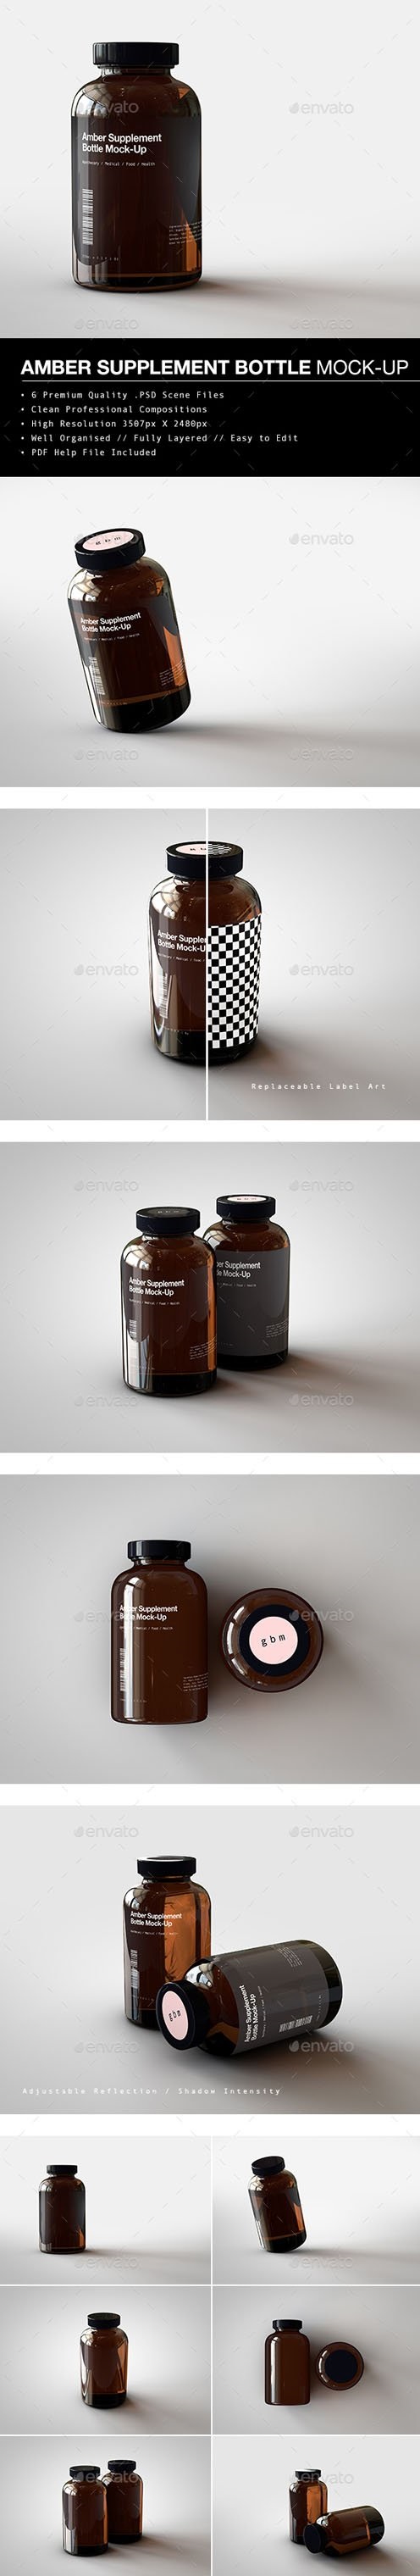 Amber Supplement Bottle | Vitamins Bottle Mock-Up 20280290